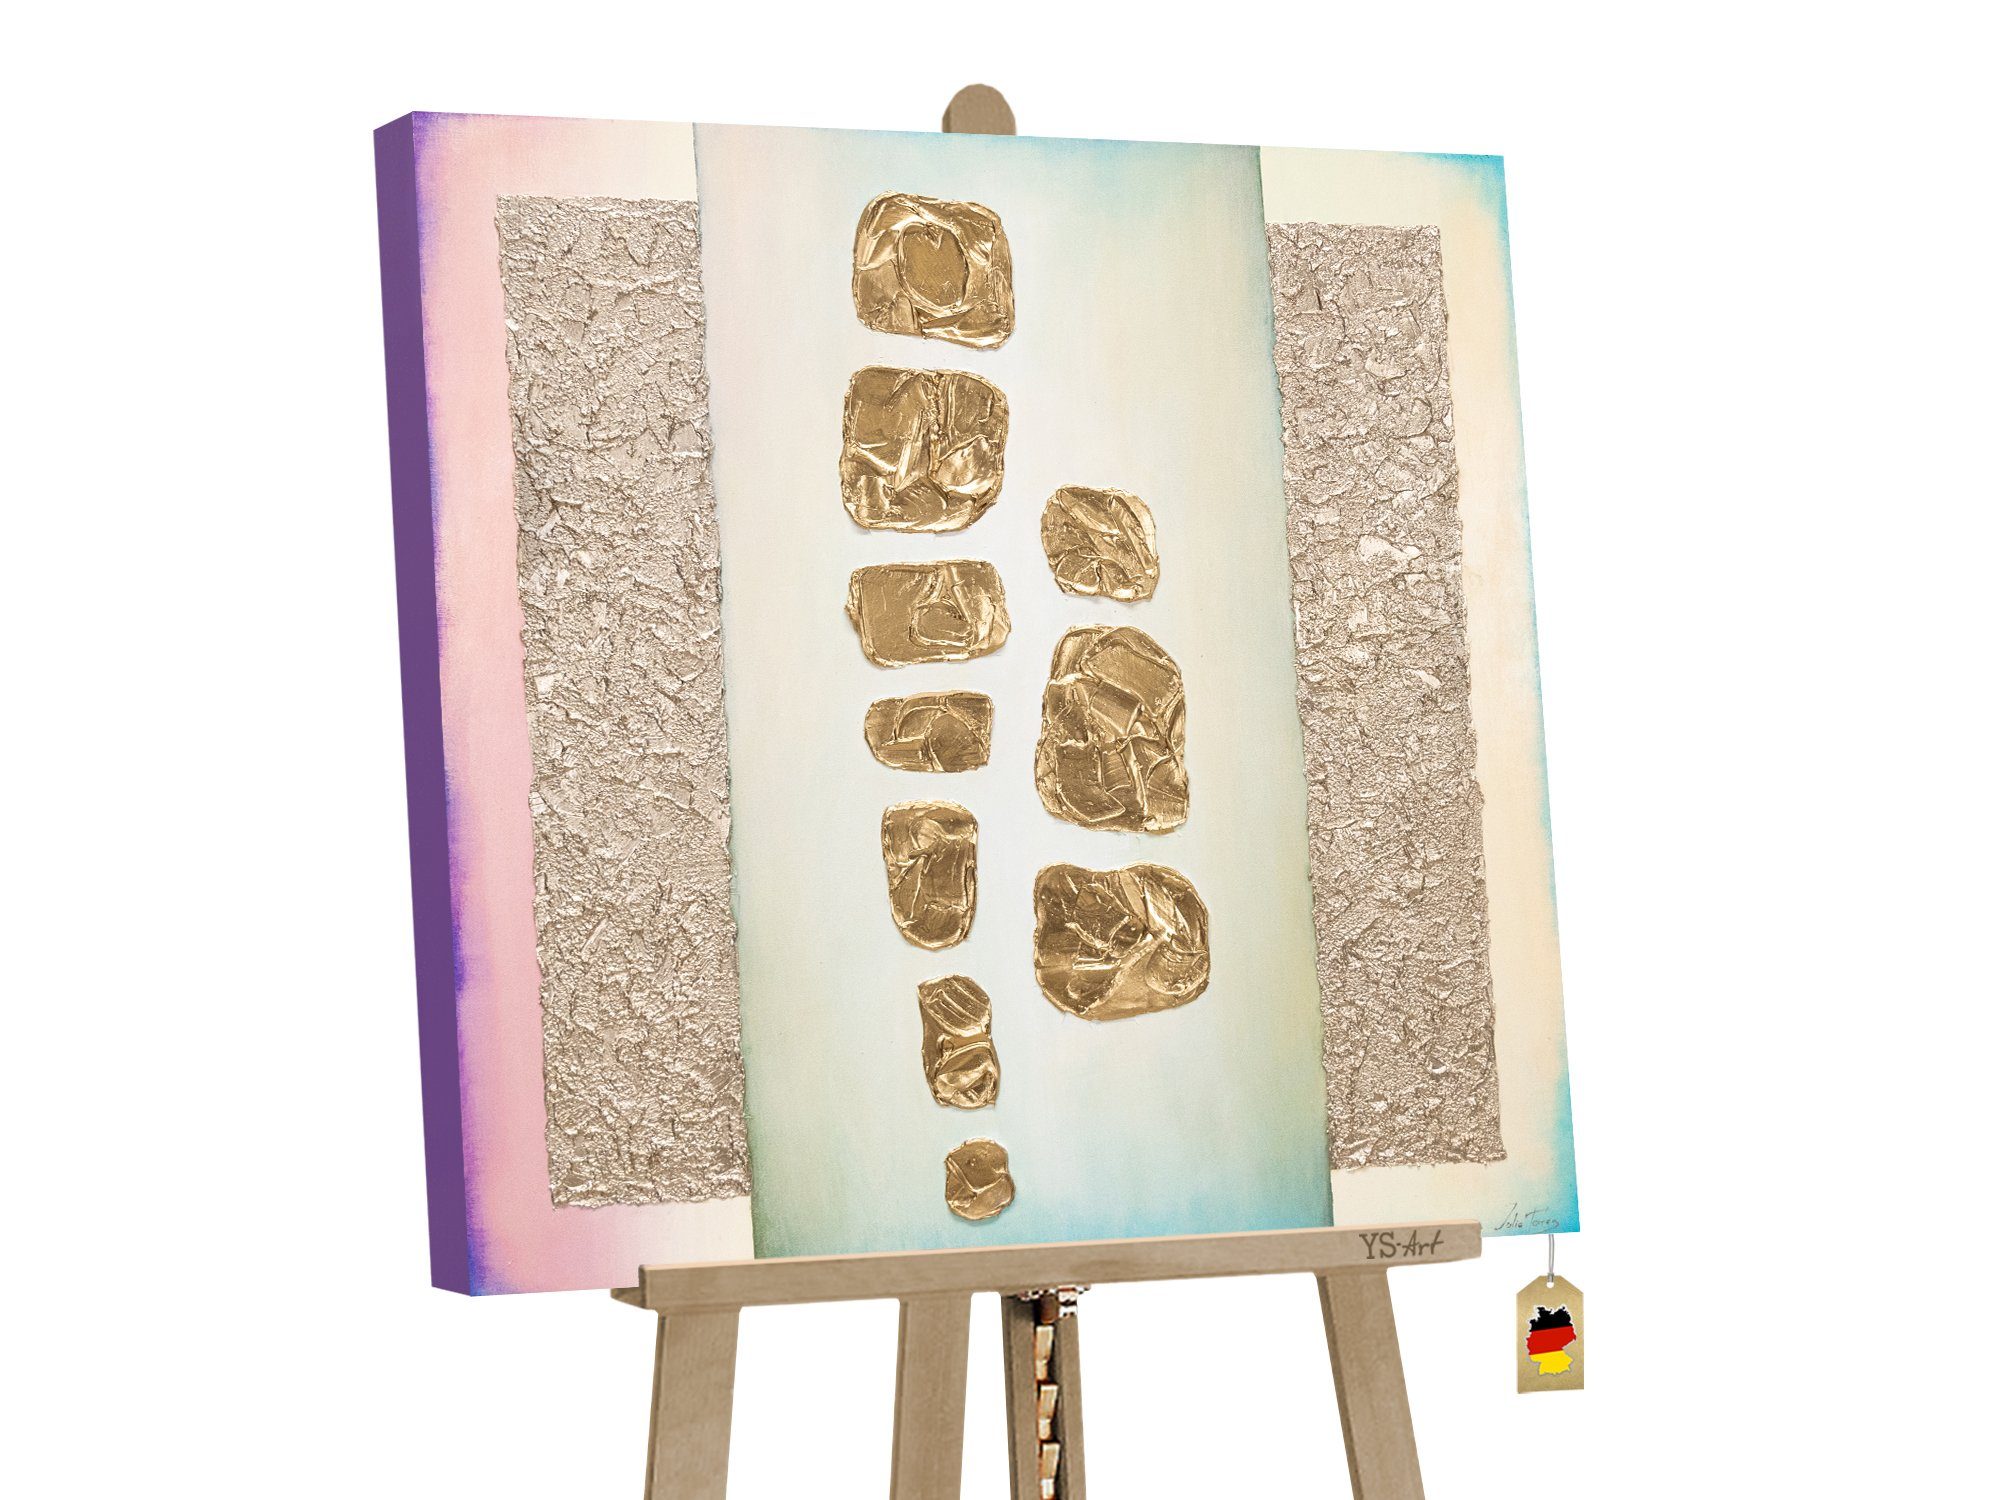 YS-Art Gemälde Goldfunkel, Abstrakte Bilder, Abstraktes auf Leinwand Bild Handgemalt Bunt Gold Lila Grün